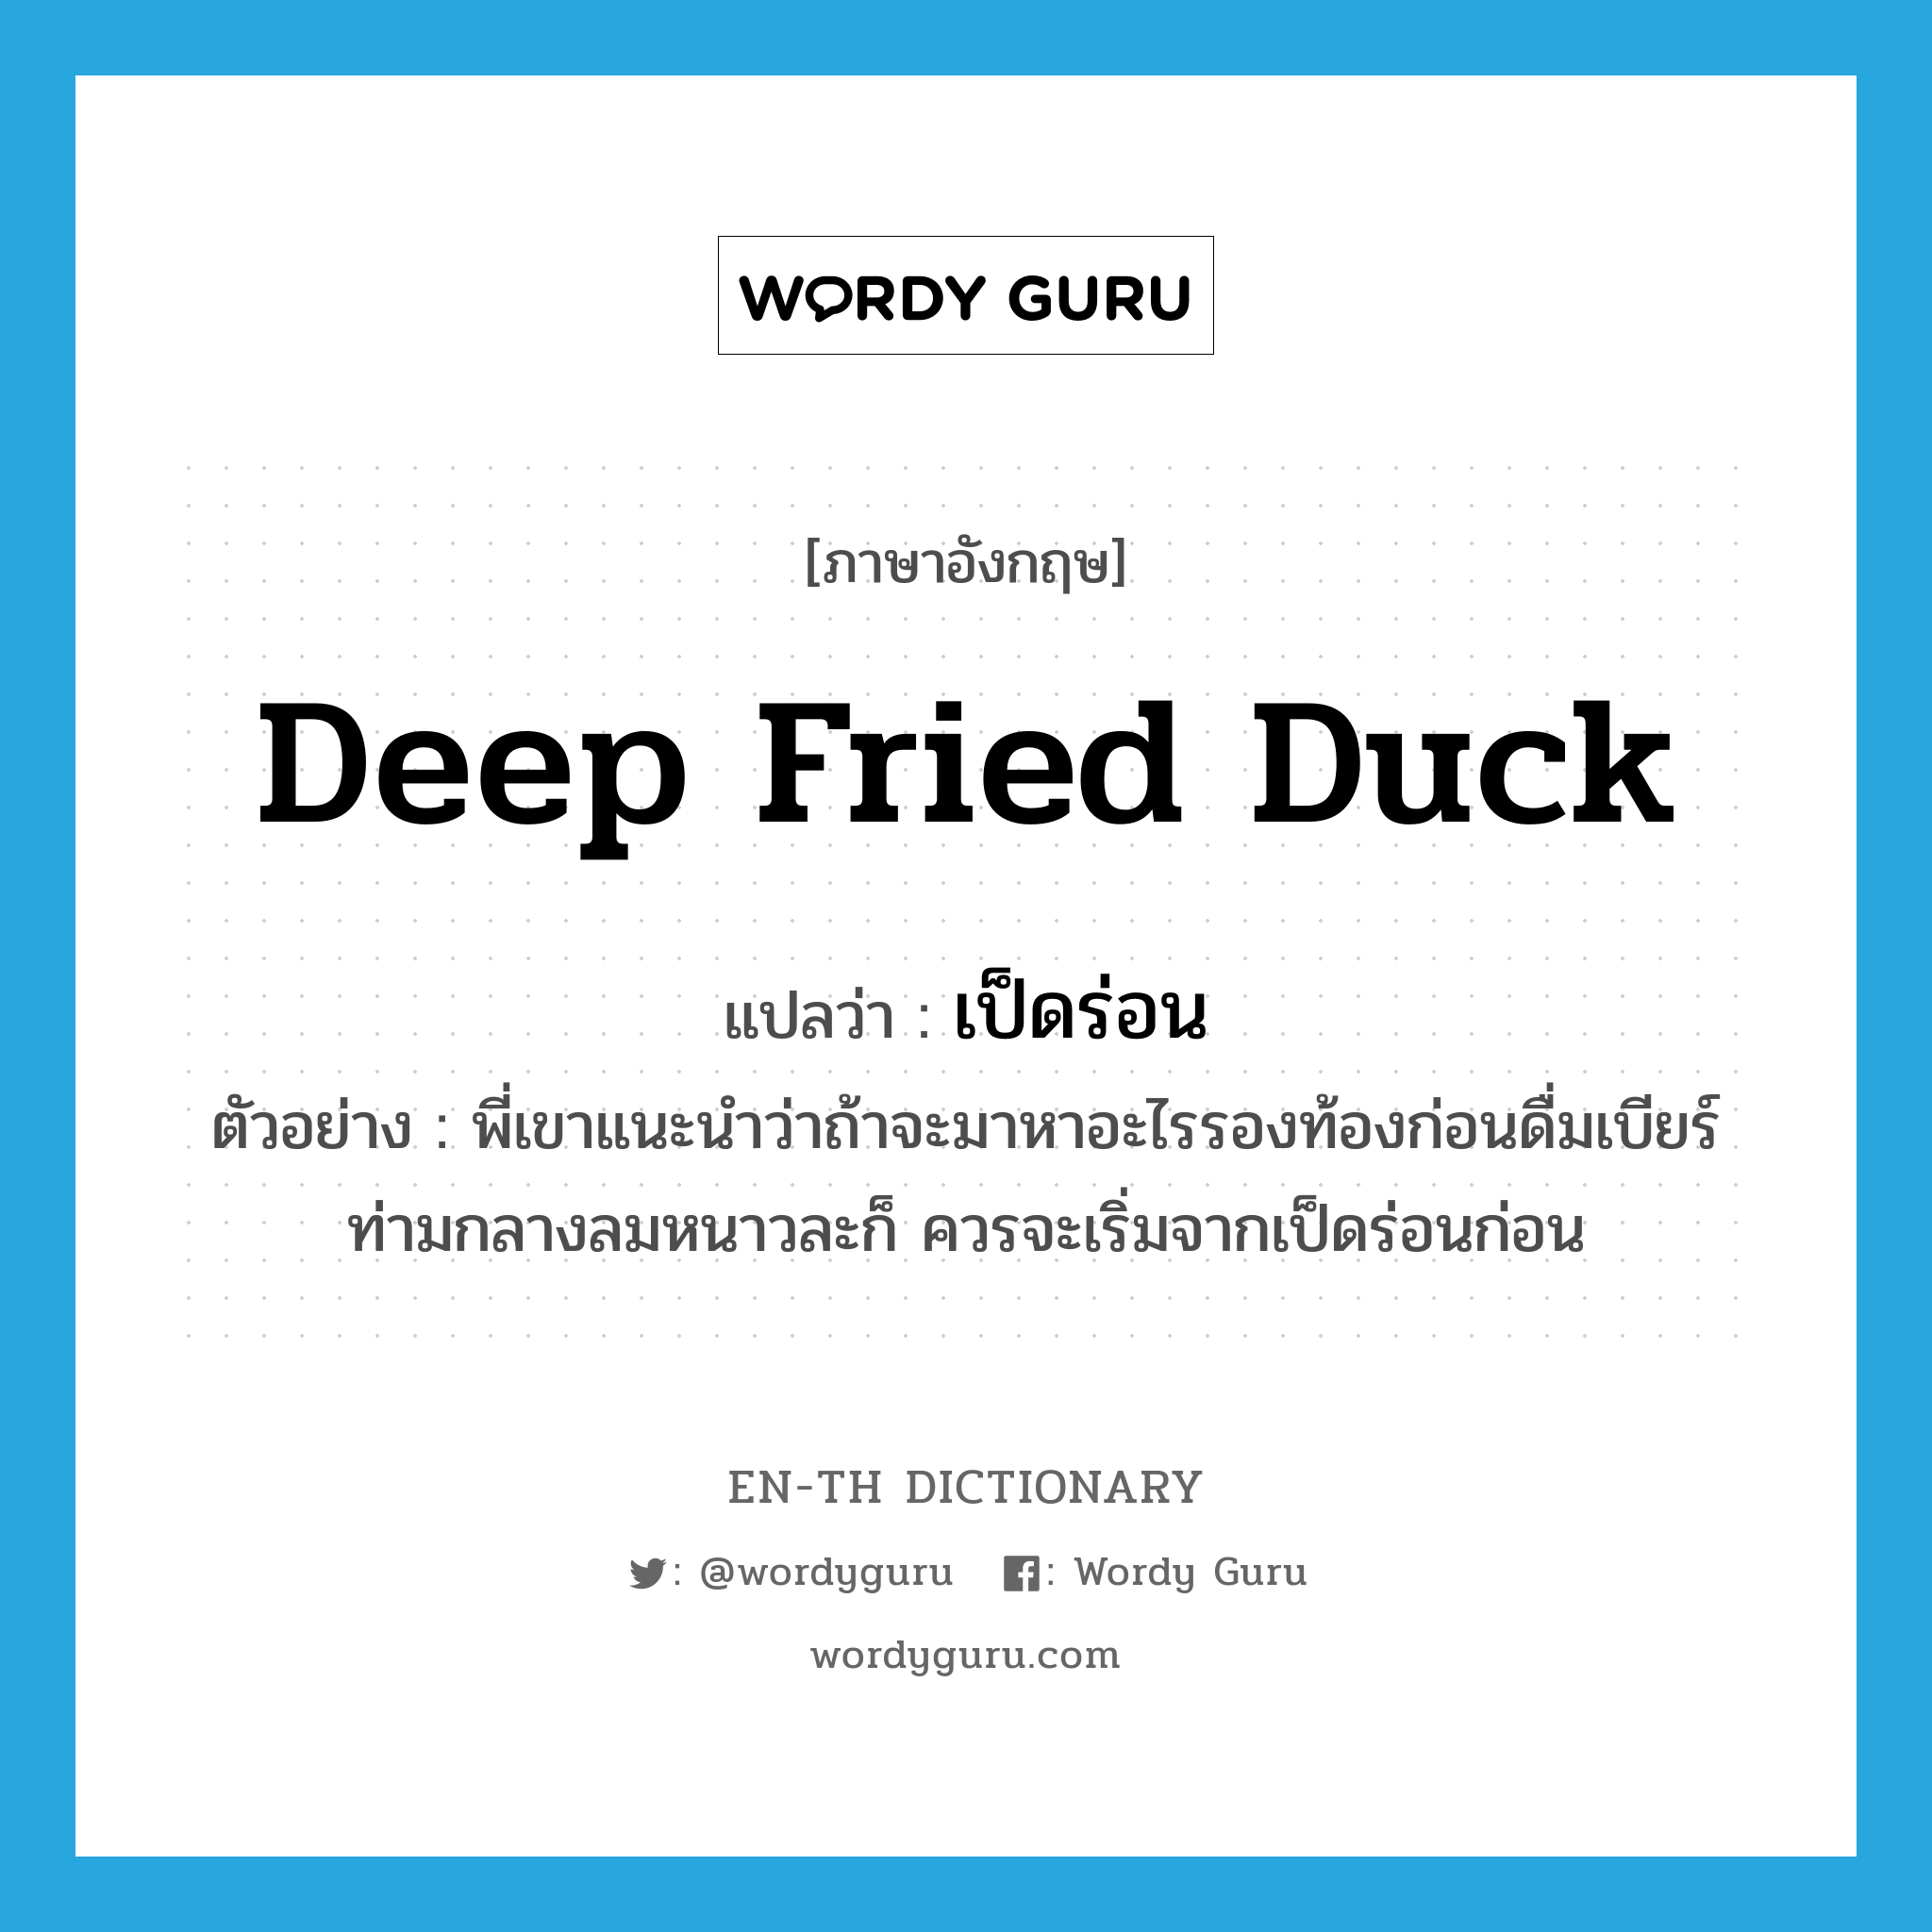 deep fried duck แปลว่า?, คำศัพท์ภาษาอังกฤษ deep fried duck แปลว่า เป็ดร่อน ประเภท N ตัวอย่าง พี่เขาแนะนำว่าถ้าจะมาหาอะไรรองท้องก่อนดื่มเบียร์ท่ามกลางลมหนาวละก็ ควรจะเริ่มจากเป็ดร่อนก่อน หมวด N